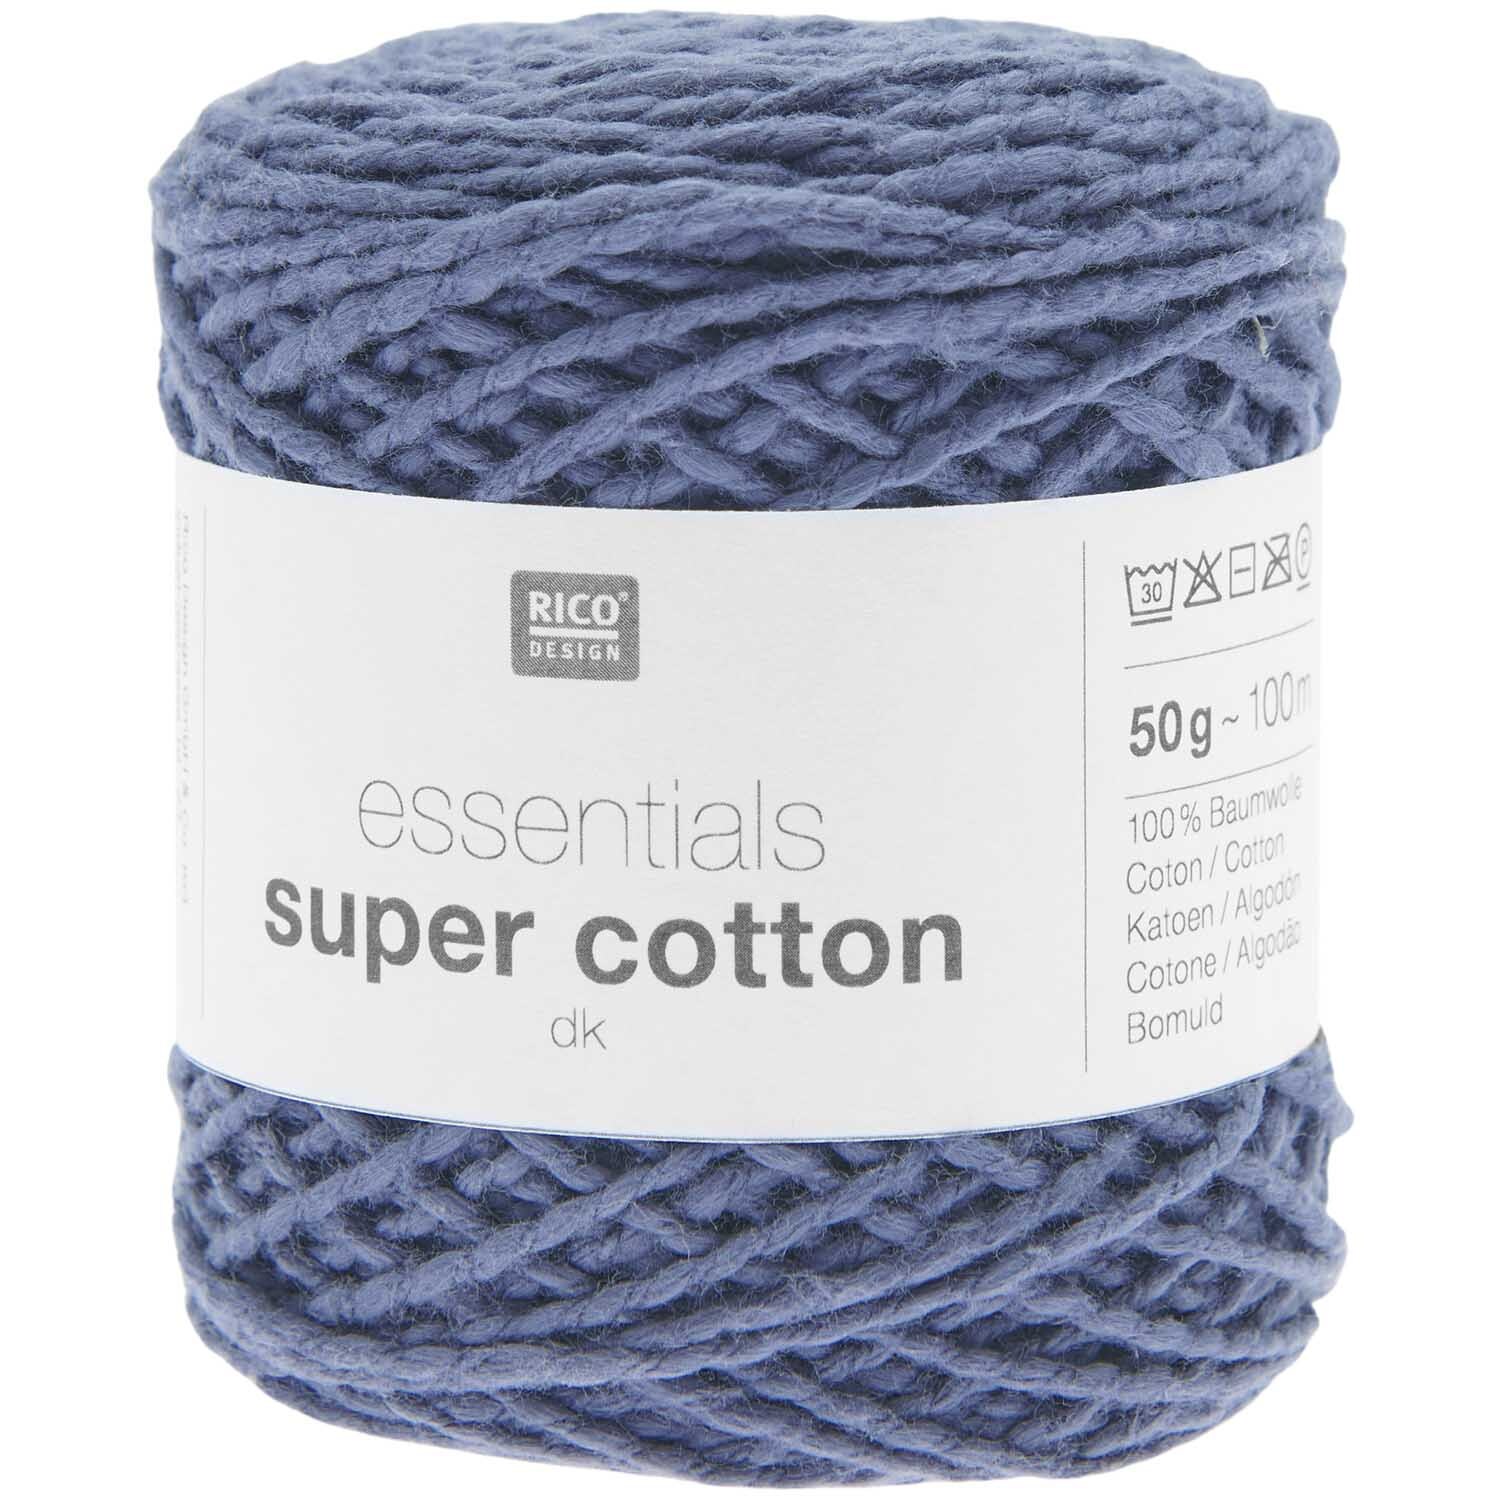 Essentials Super Cotton dk